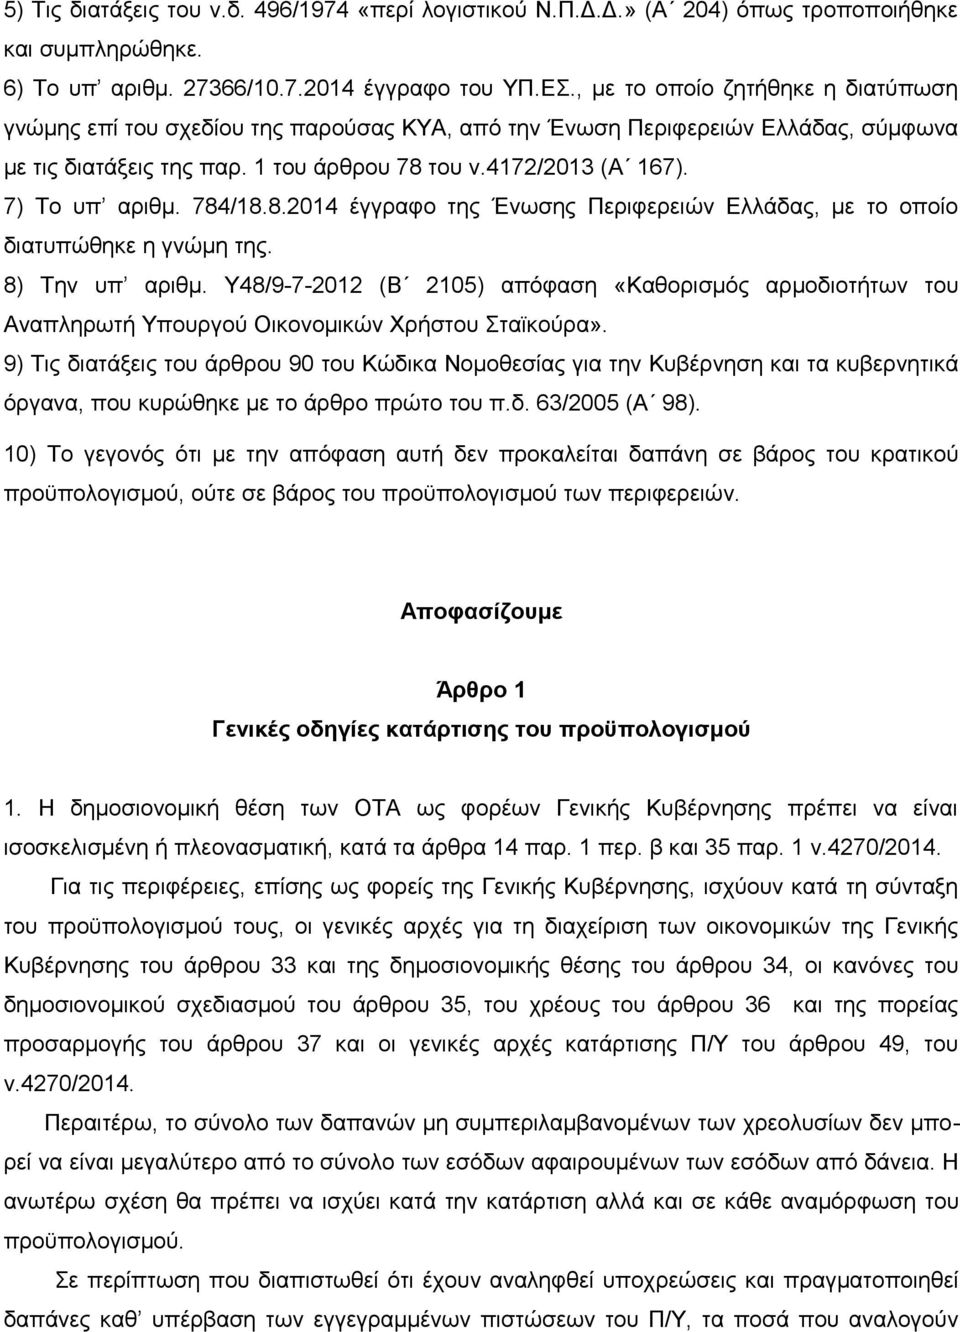 7) Το υπ αριθμ. 784/18.8.2014 έγγραφο της Ένωσης Περιφερειών Ελλάδας, με το οποίο διατυπώθηκε η γνώμη της. 8) Την υπ αριθμ.